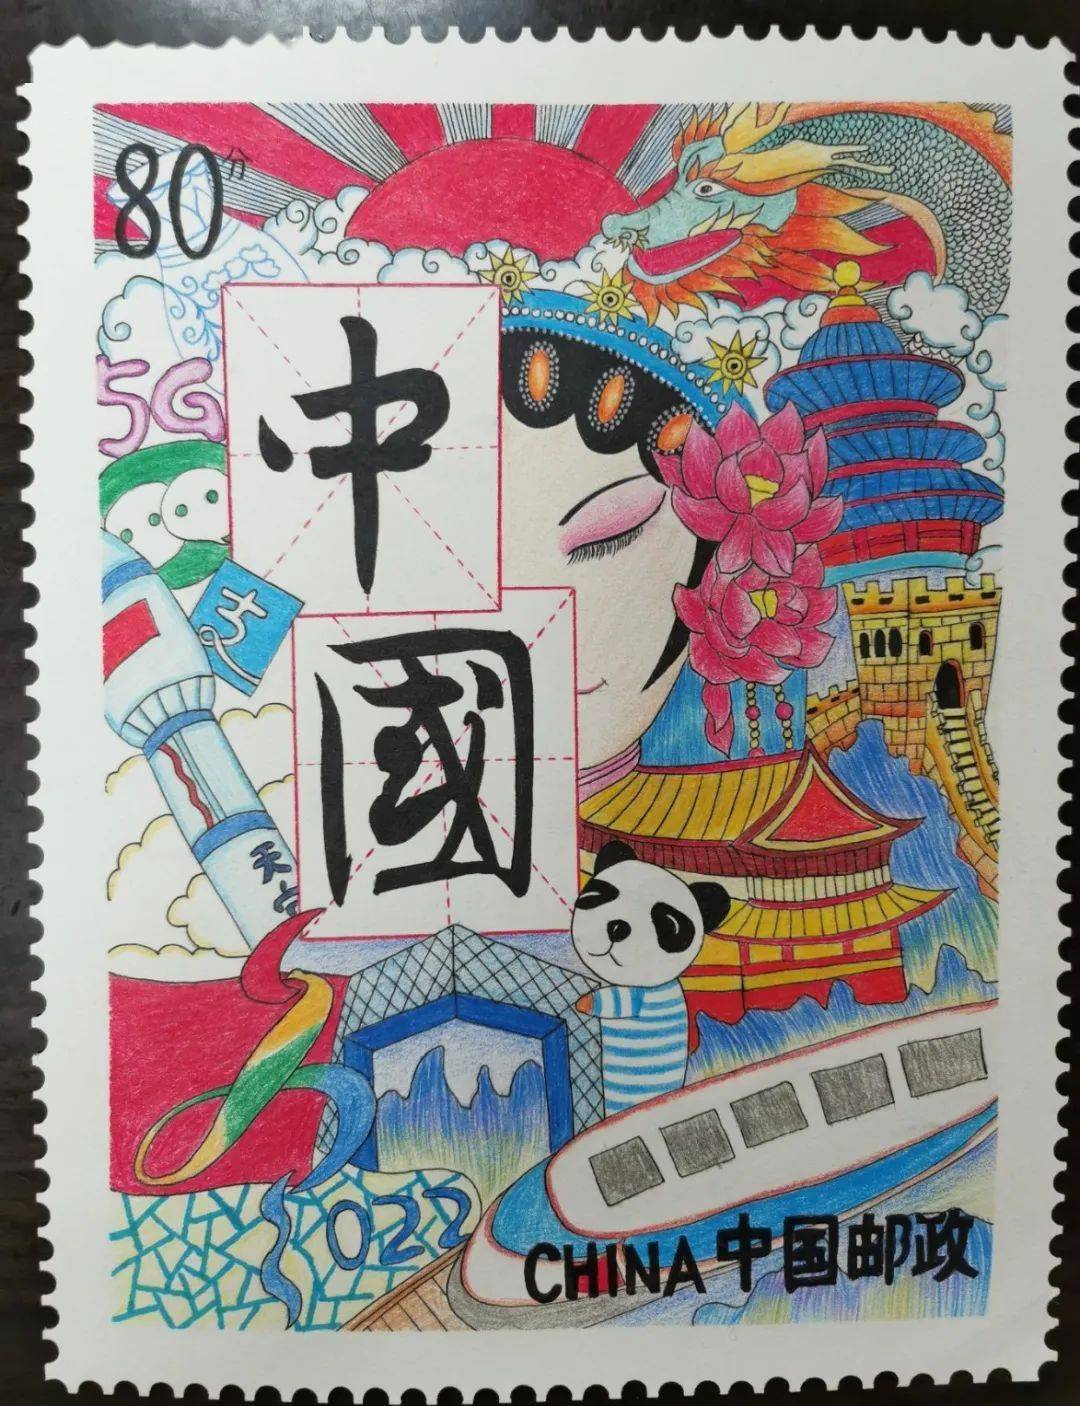 6月1日,中国邮政将发行一套 《 儿童画作品选》邮票.